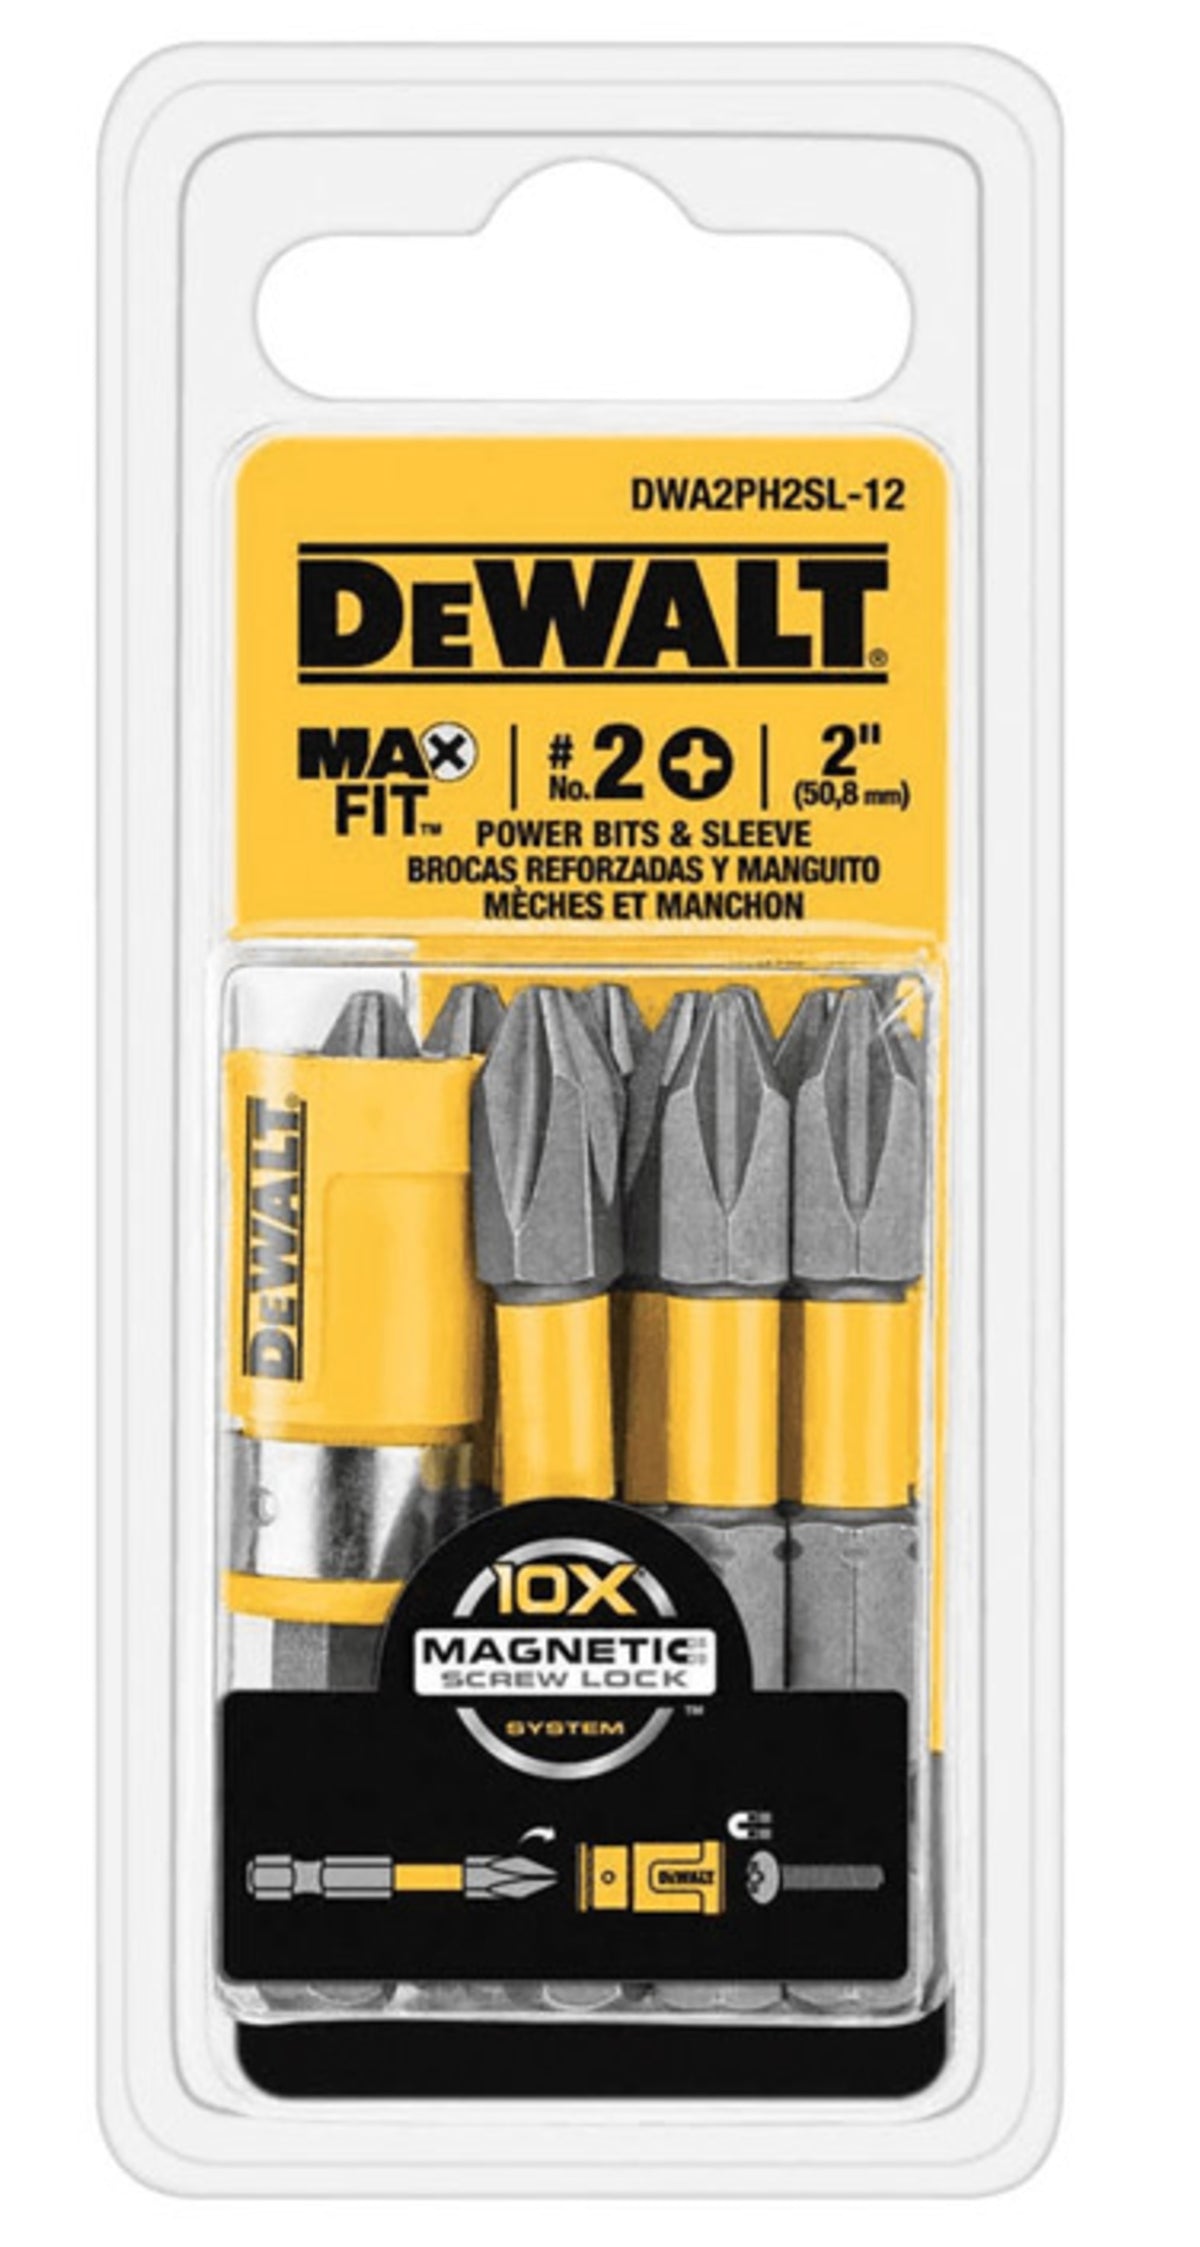 DeWalt DWA2PH2SL-12 MAXFIT Phillips Power Bit & Sleeve Set, #2 x 2"